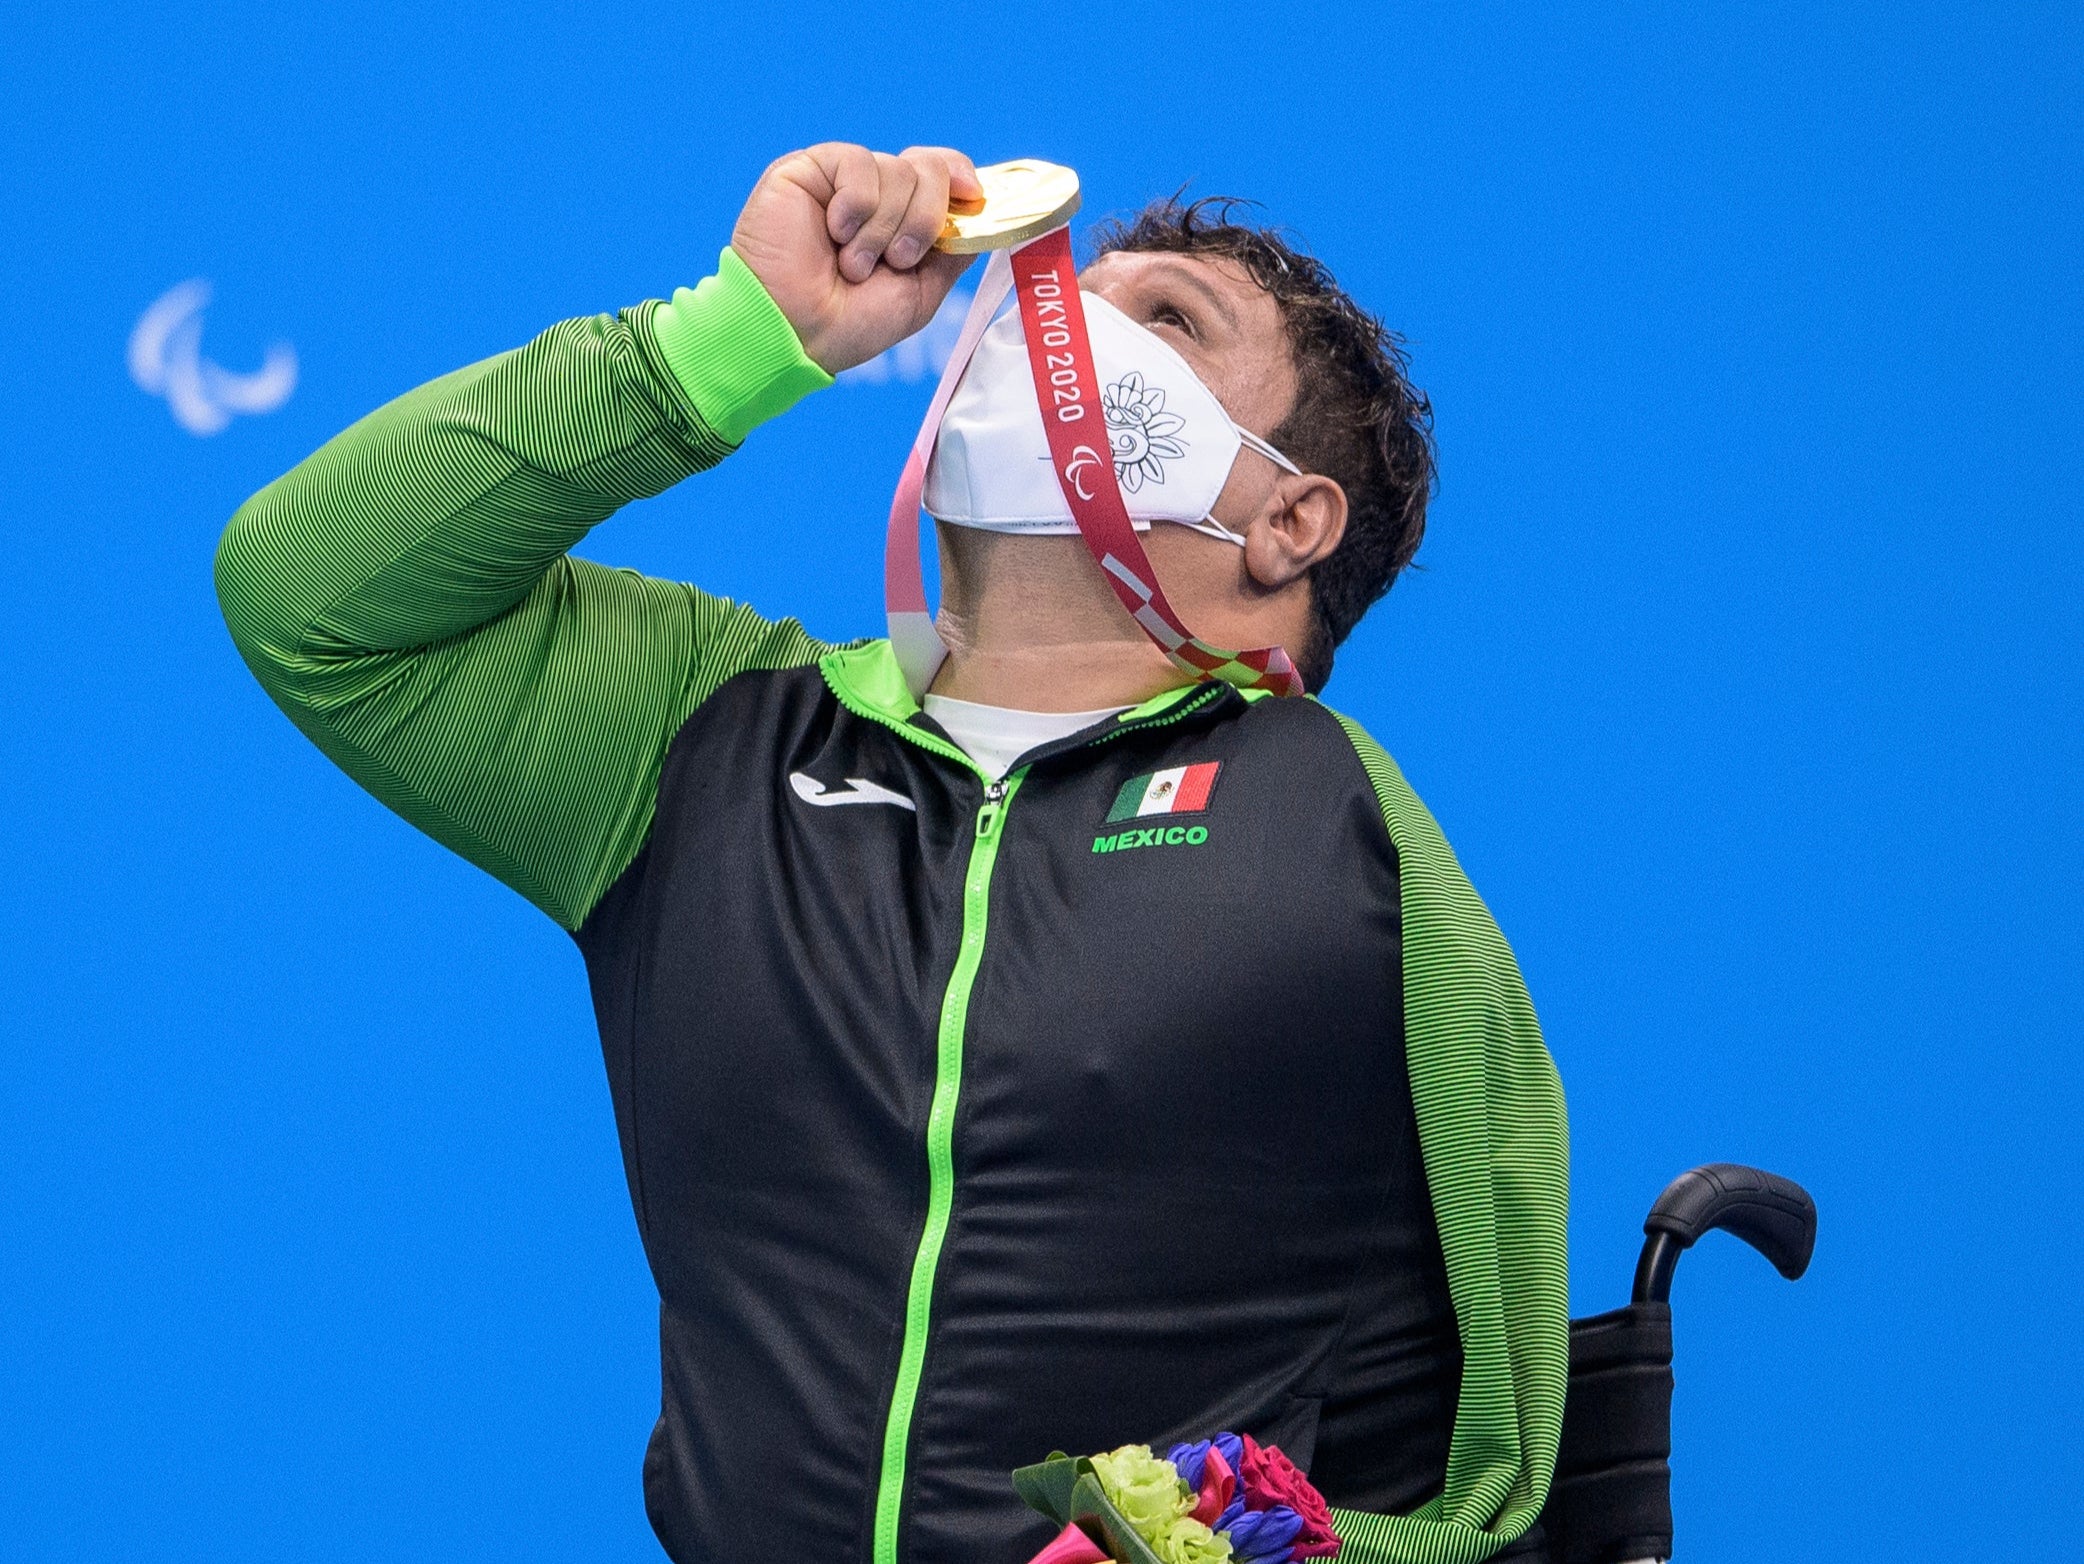 El medallista de oro Arnulfo Castorena celebra durante la ceremonia de entrega de medallas de la natación masculina 50 m braza - SB2 Final en el Centro Acuático de Tokio el martes 31 de agosto de 2021.